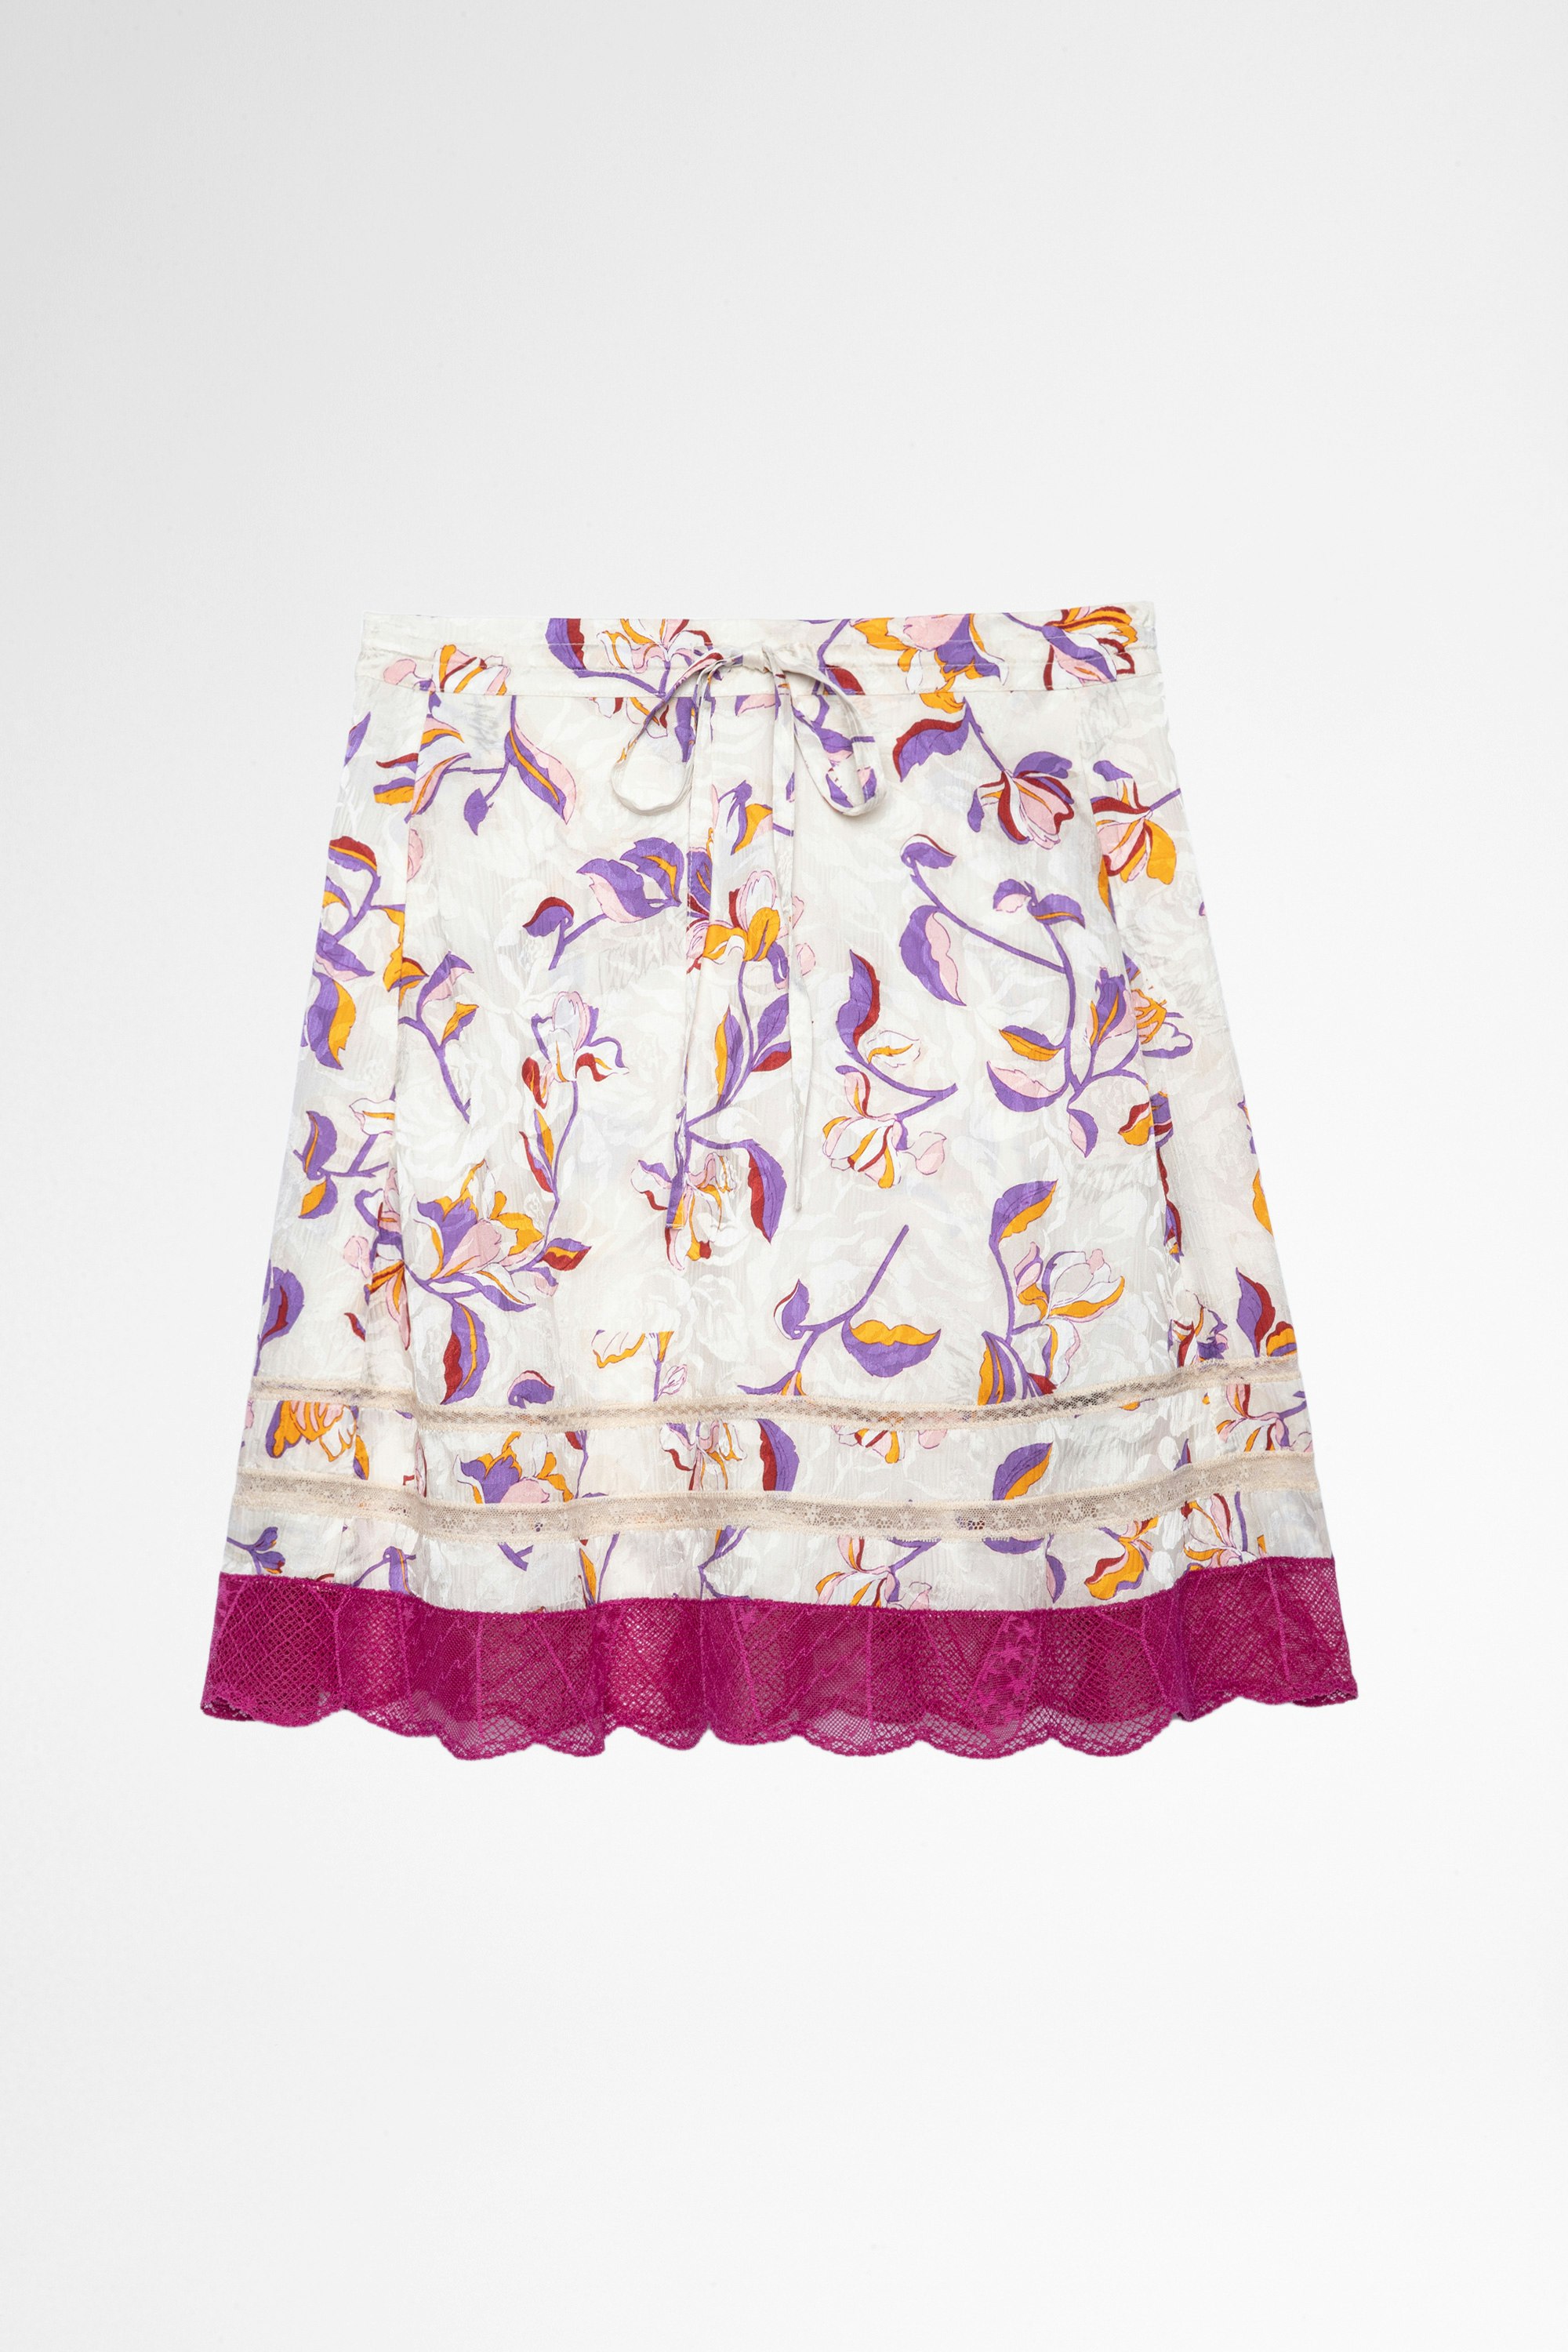 Jaelle Skirt Women's beige floral print skirt